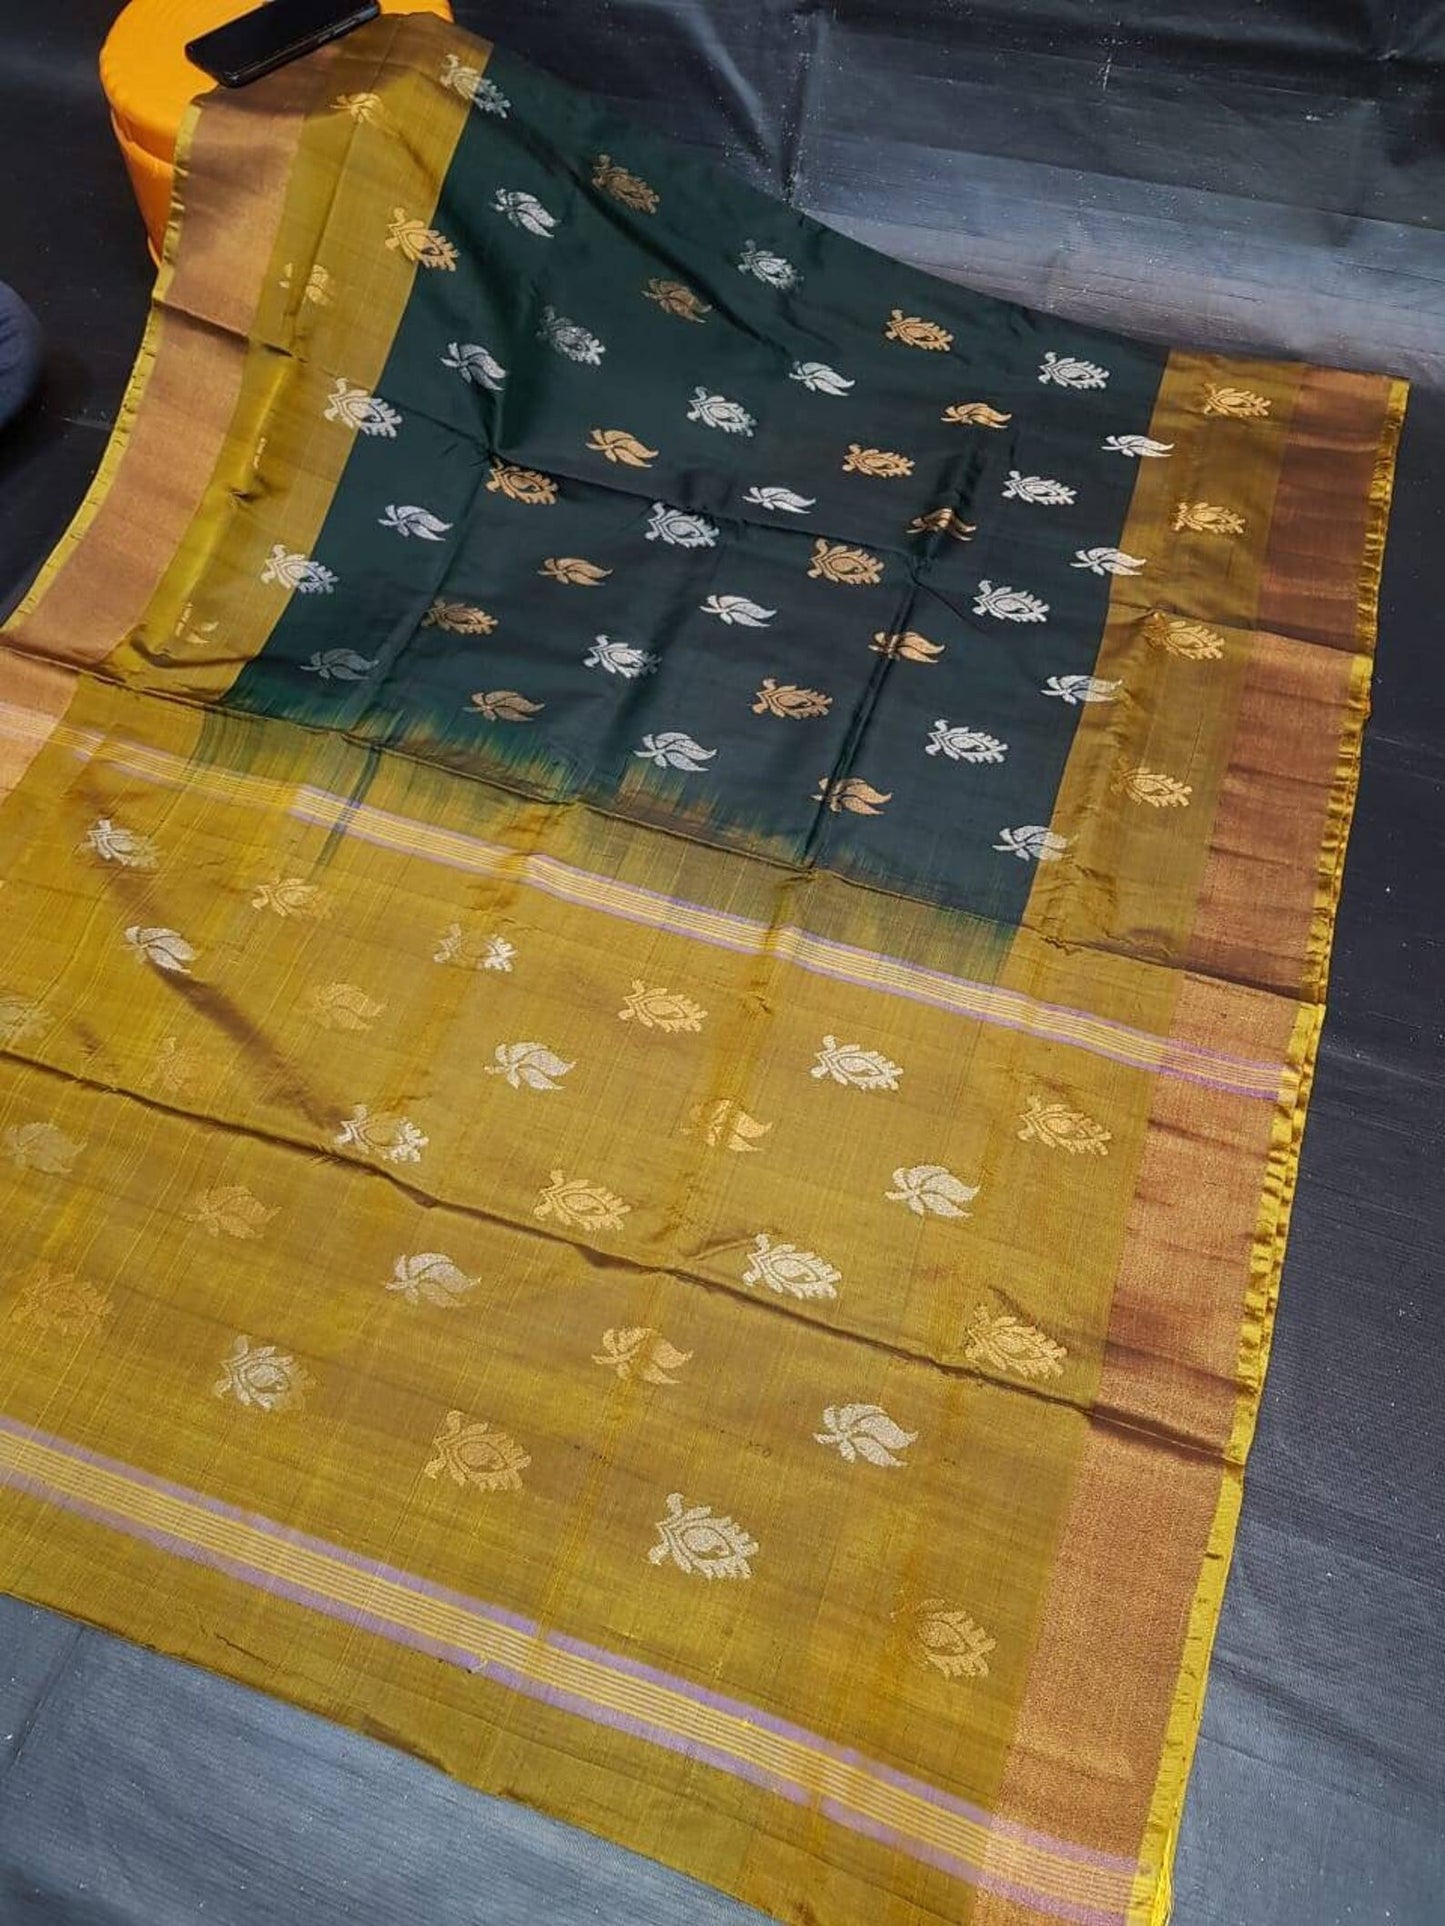 Green and Gold Uppada soft silk pattu full silver and gold butta saree - light weight saree, saree for woman